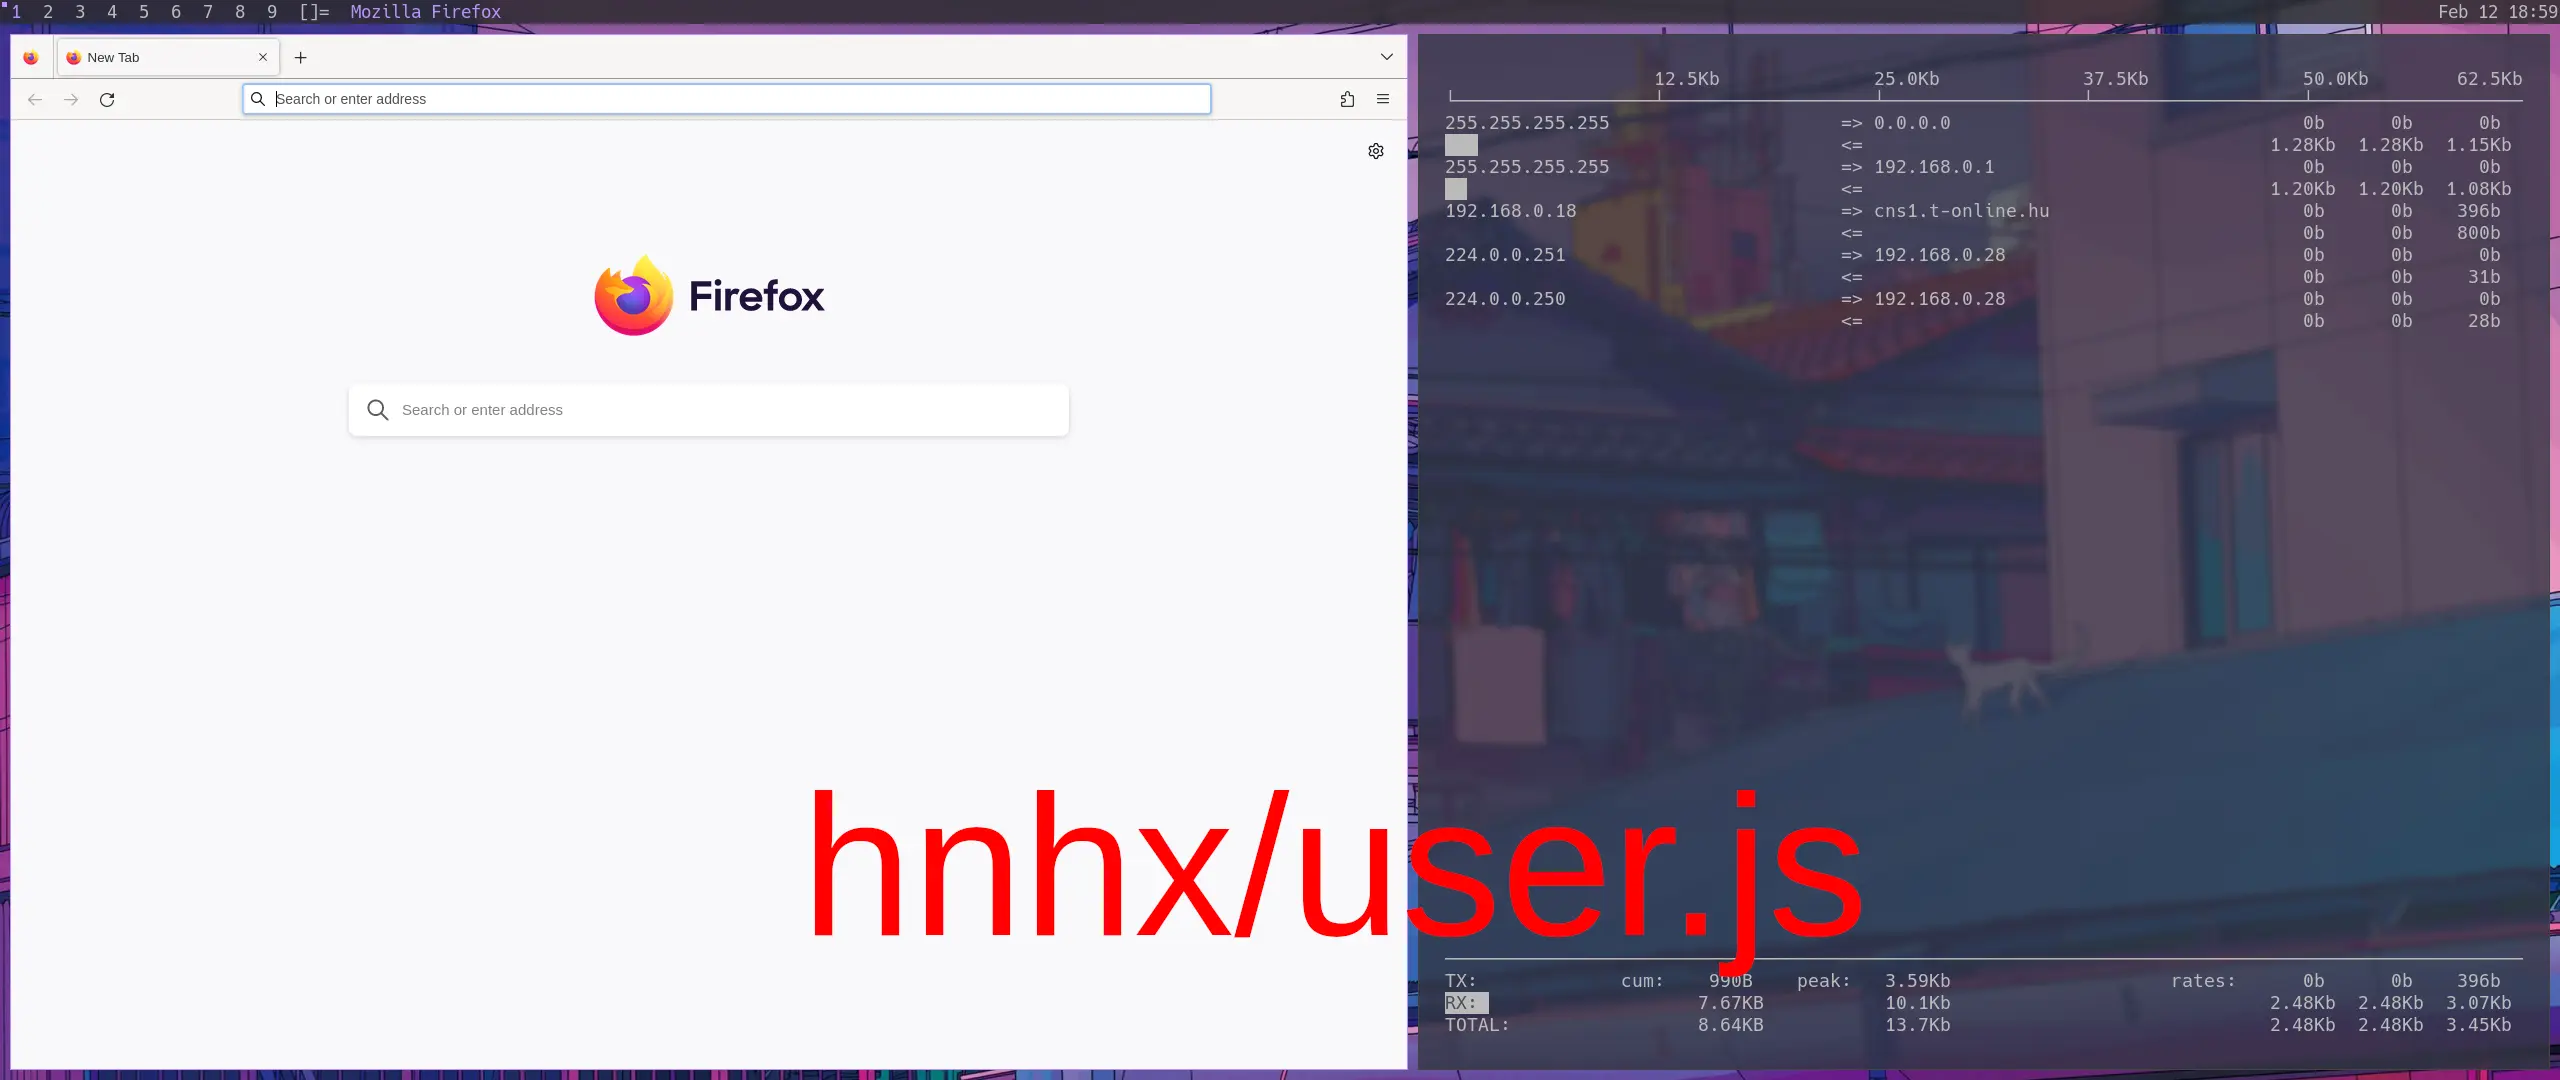 hnhx/user.js